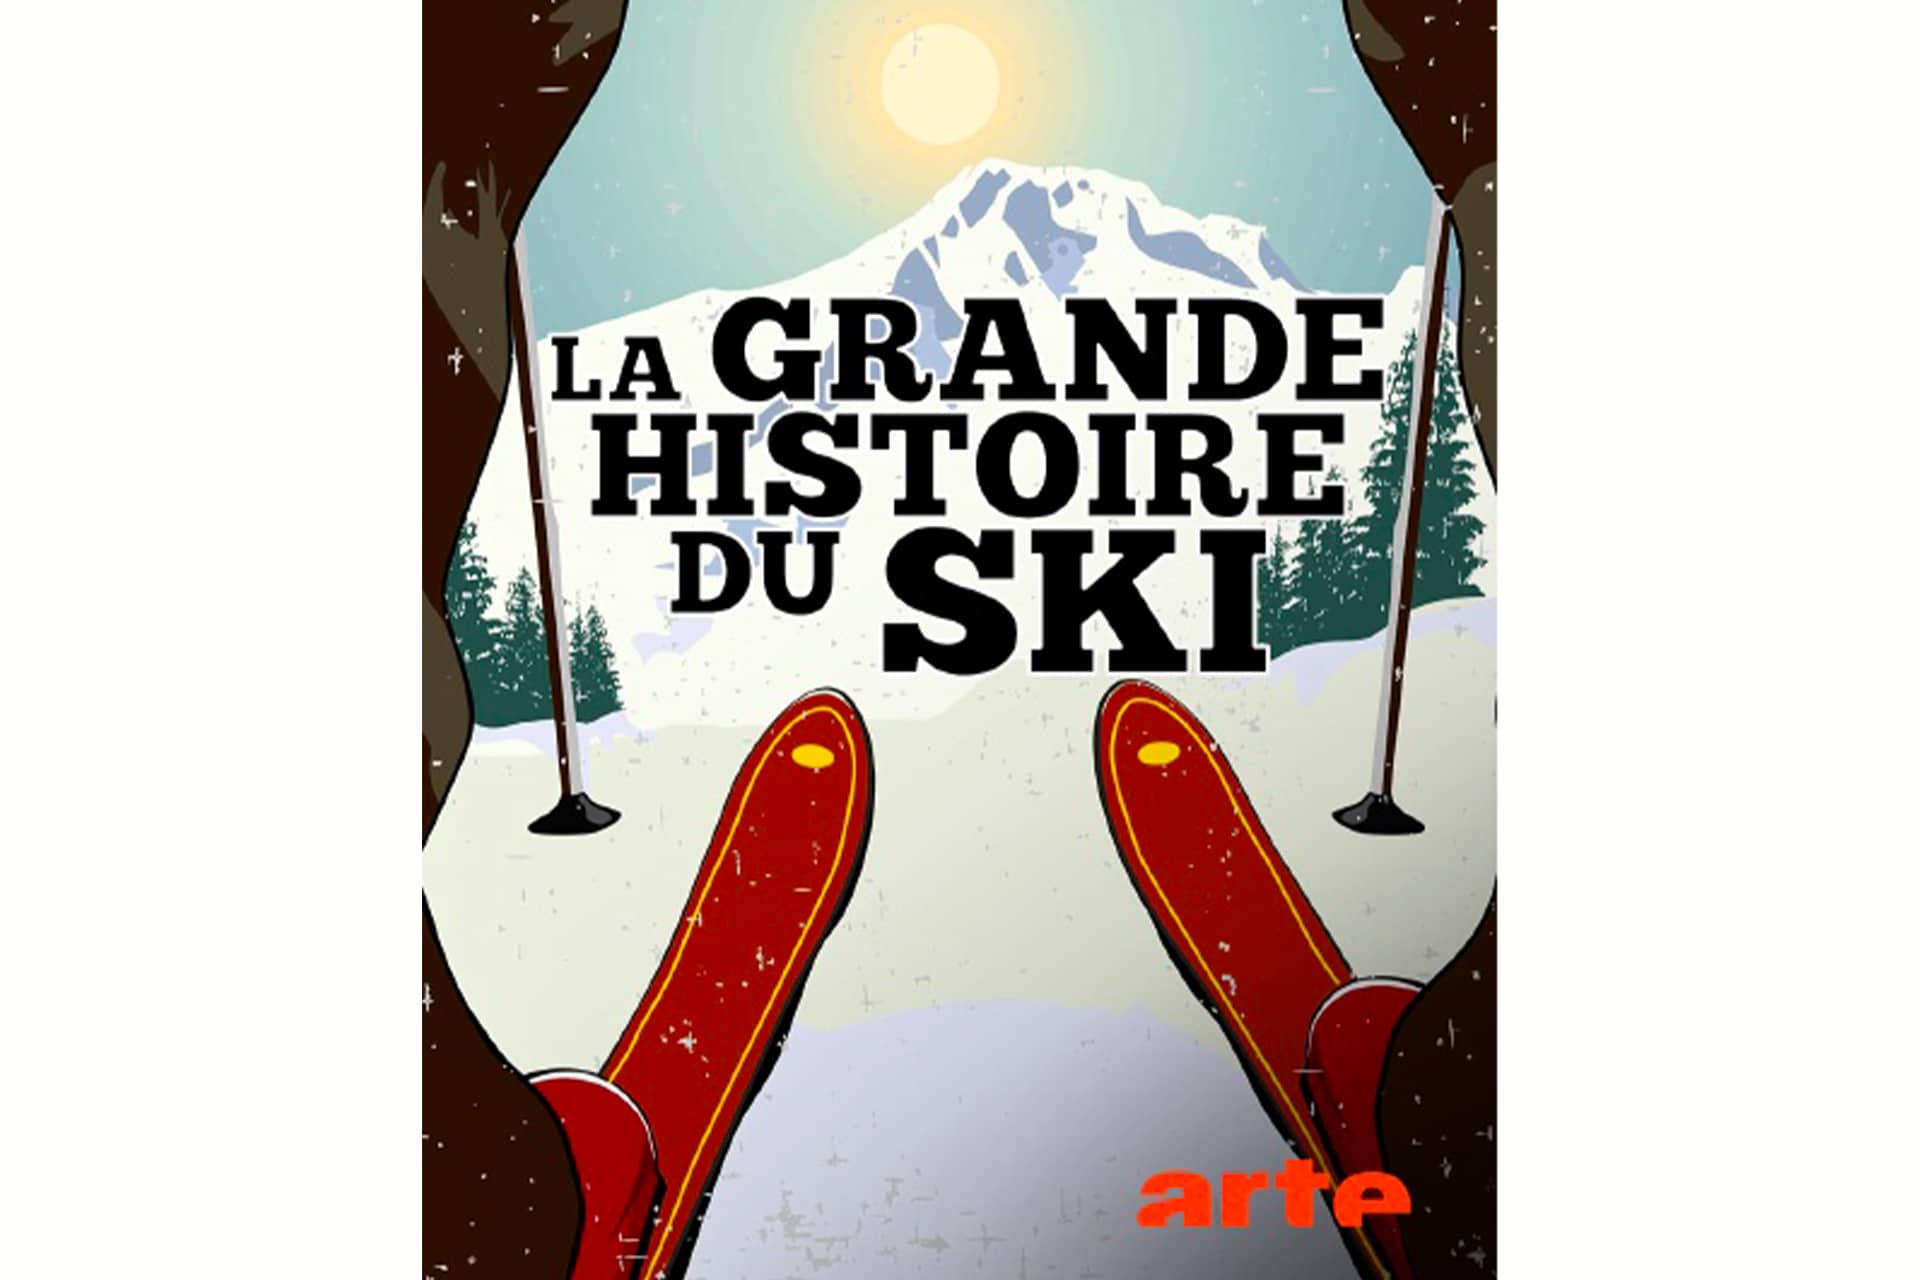 Ski alpin, une histoire de style